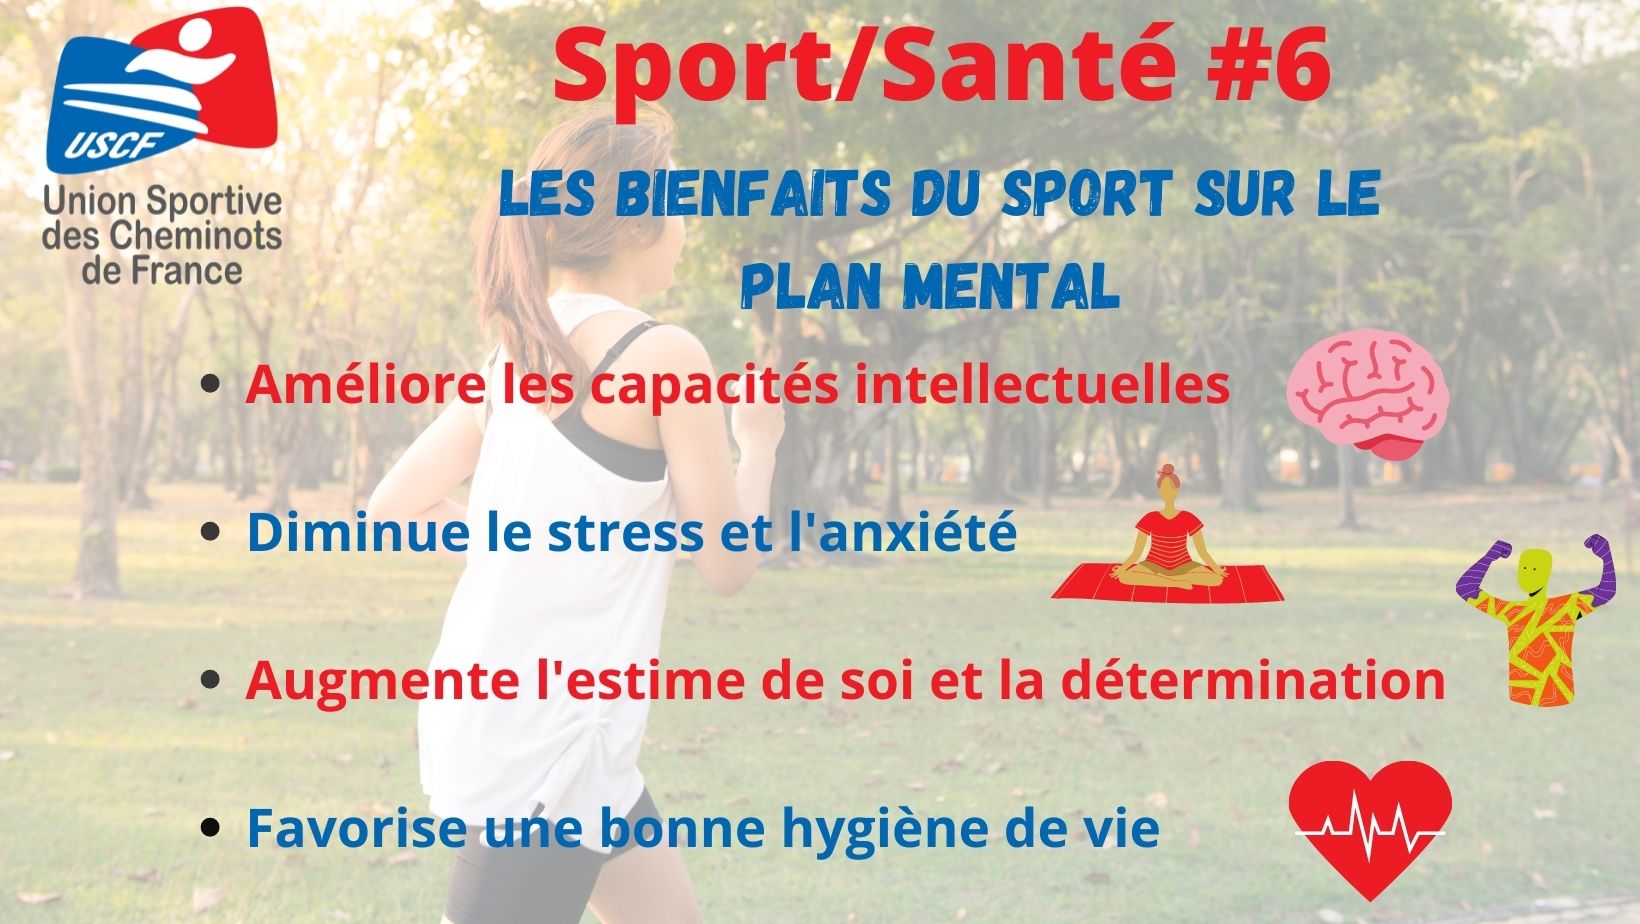 Sport Santé #6 : Les bienfaits du sport sur le plan mental